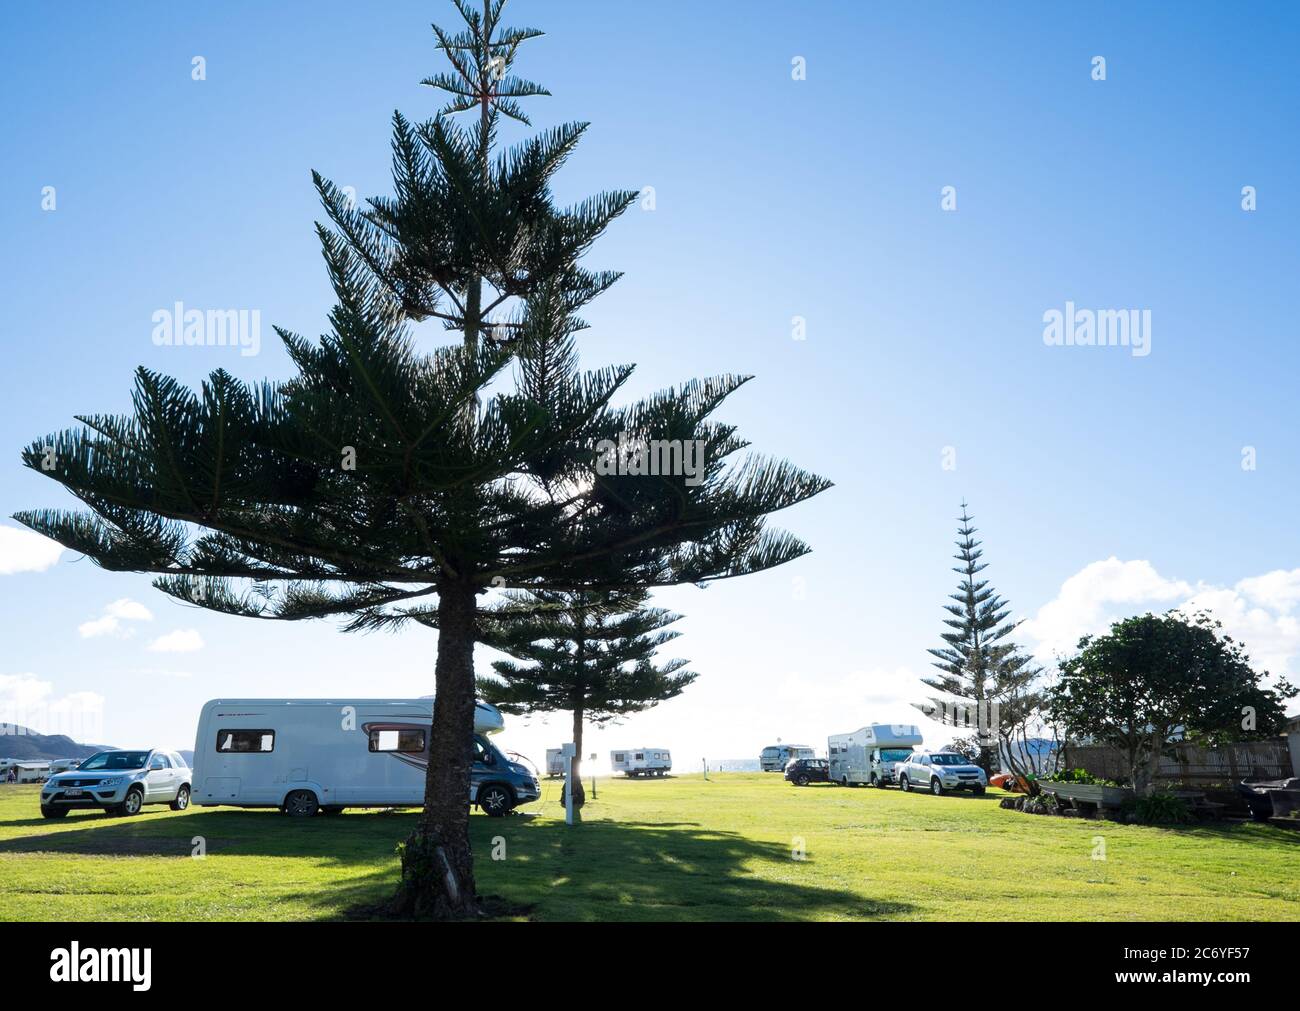 Northland, Nuova Zelanda, Nuova Zelanda - 12 luglio 2020: Camper, camper e auto al parco vacanze Tauranga Bay in inverno Foto Stock